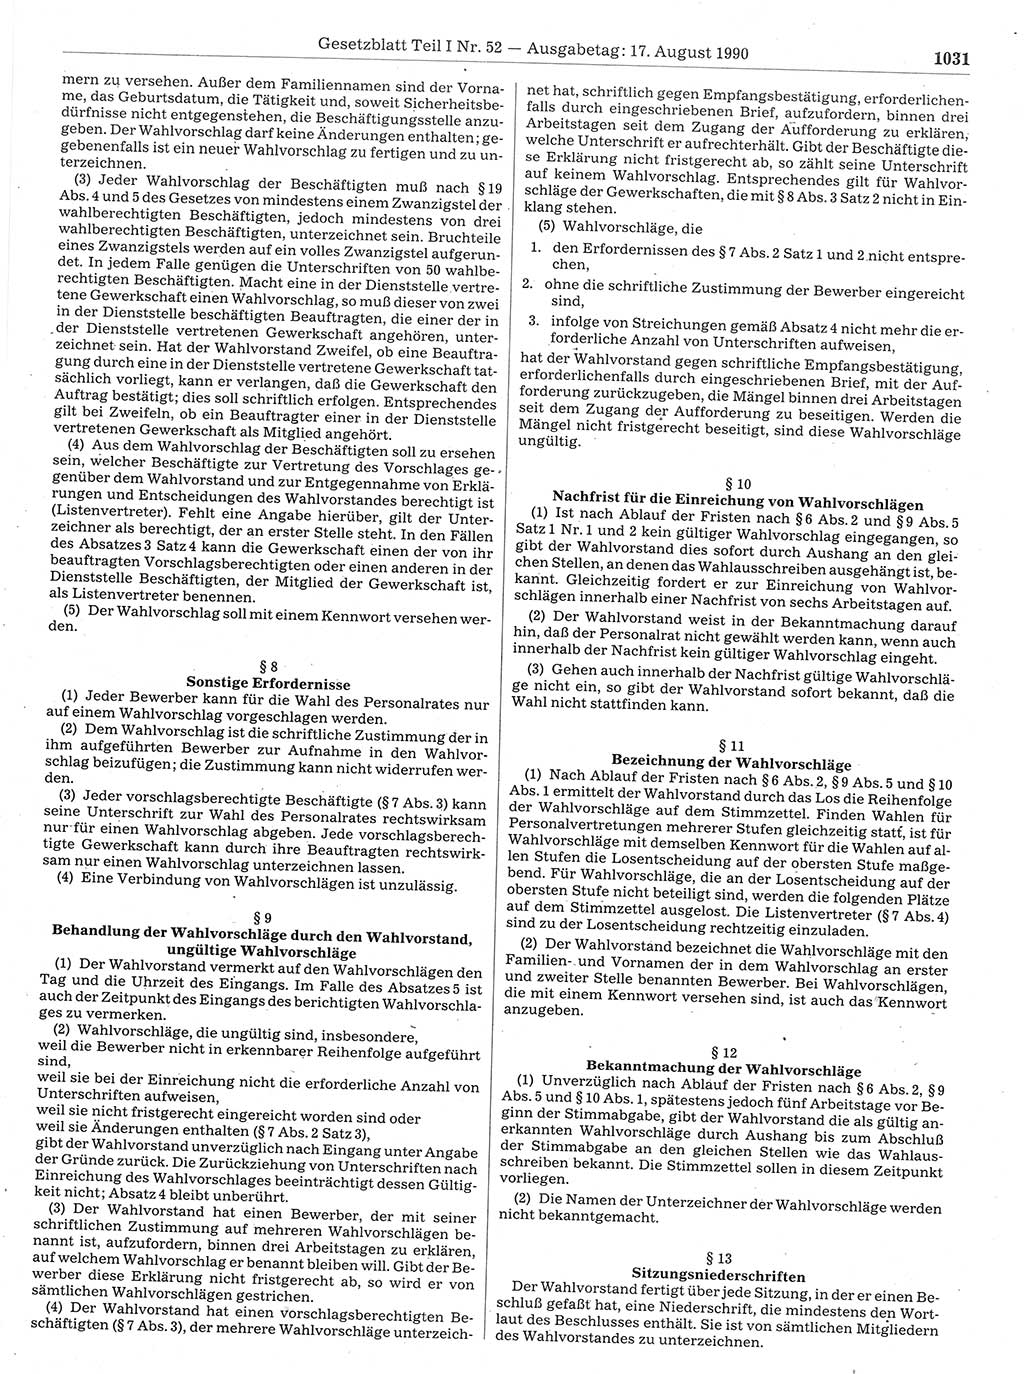 Gesetzblatt (GBl.) der Deutschen Demokratischen Republik (DDR) Teil Ⅰ 1990, Seite 1031 (GBl. DDR Ⅰ 1990, S. 1031)